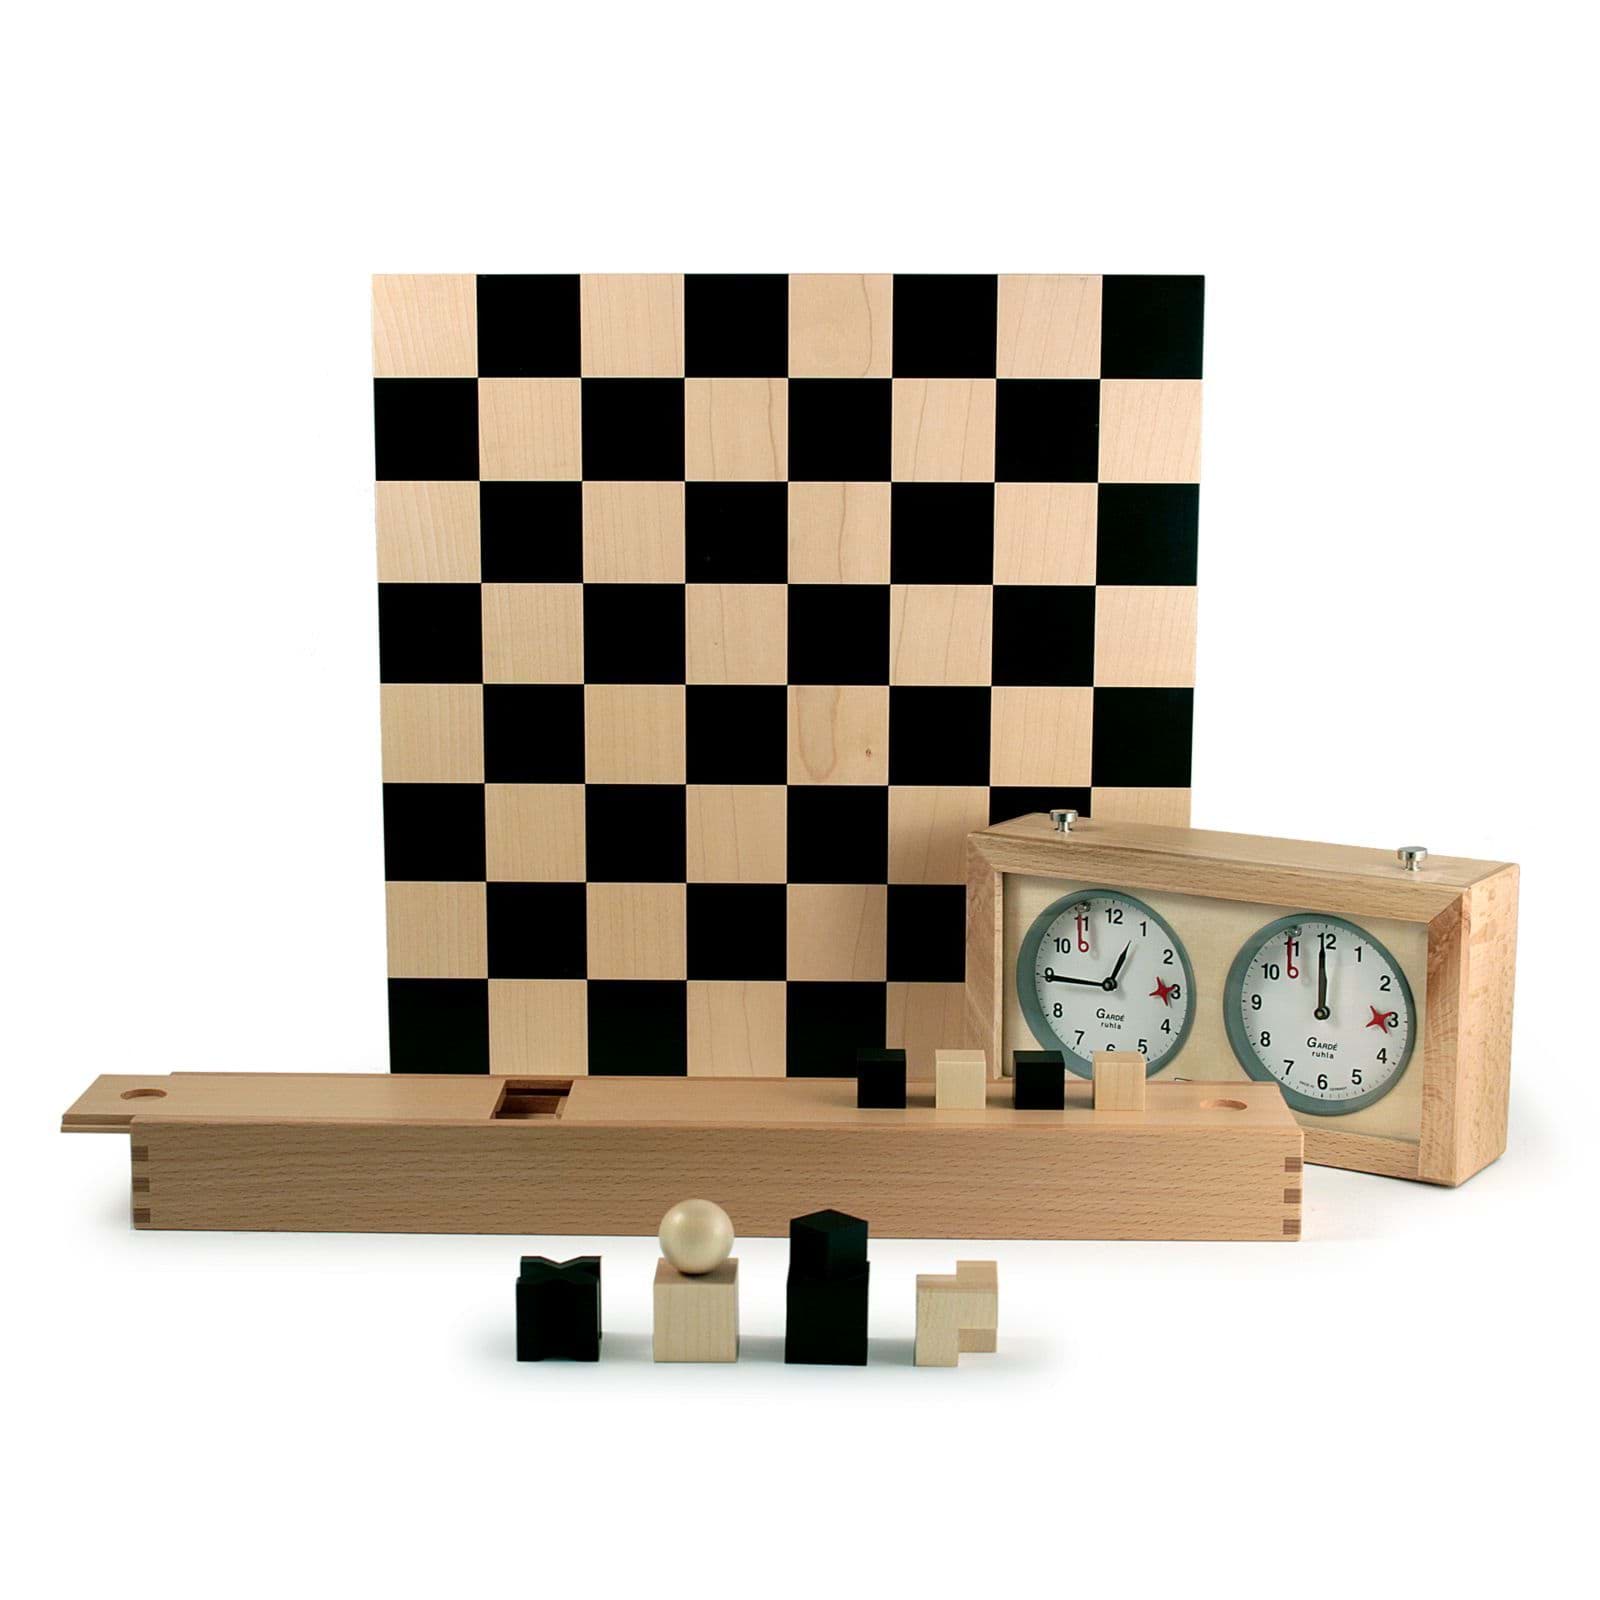 εικόνα του Σκάκι Bauhaus από τον Josef Hartwig + Ρολόι σκακιού 